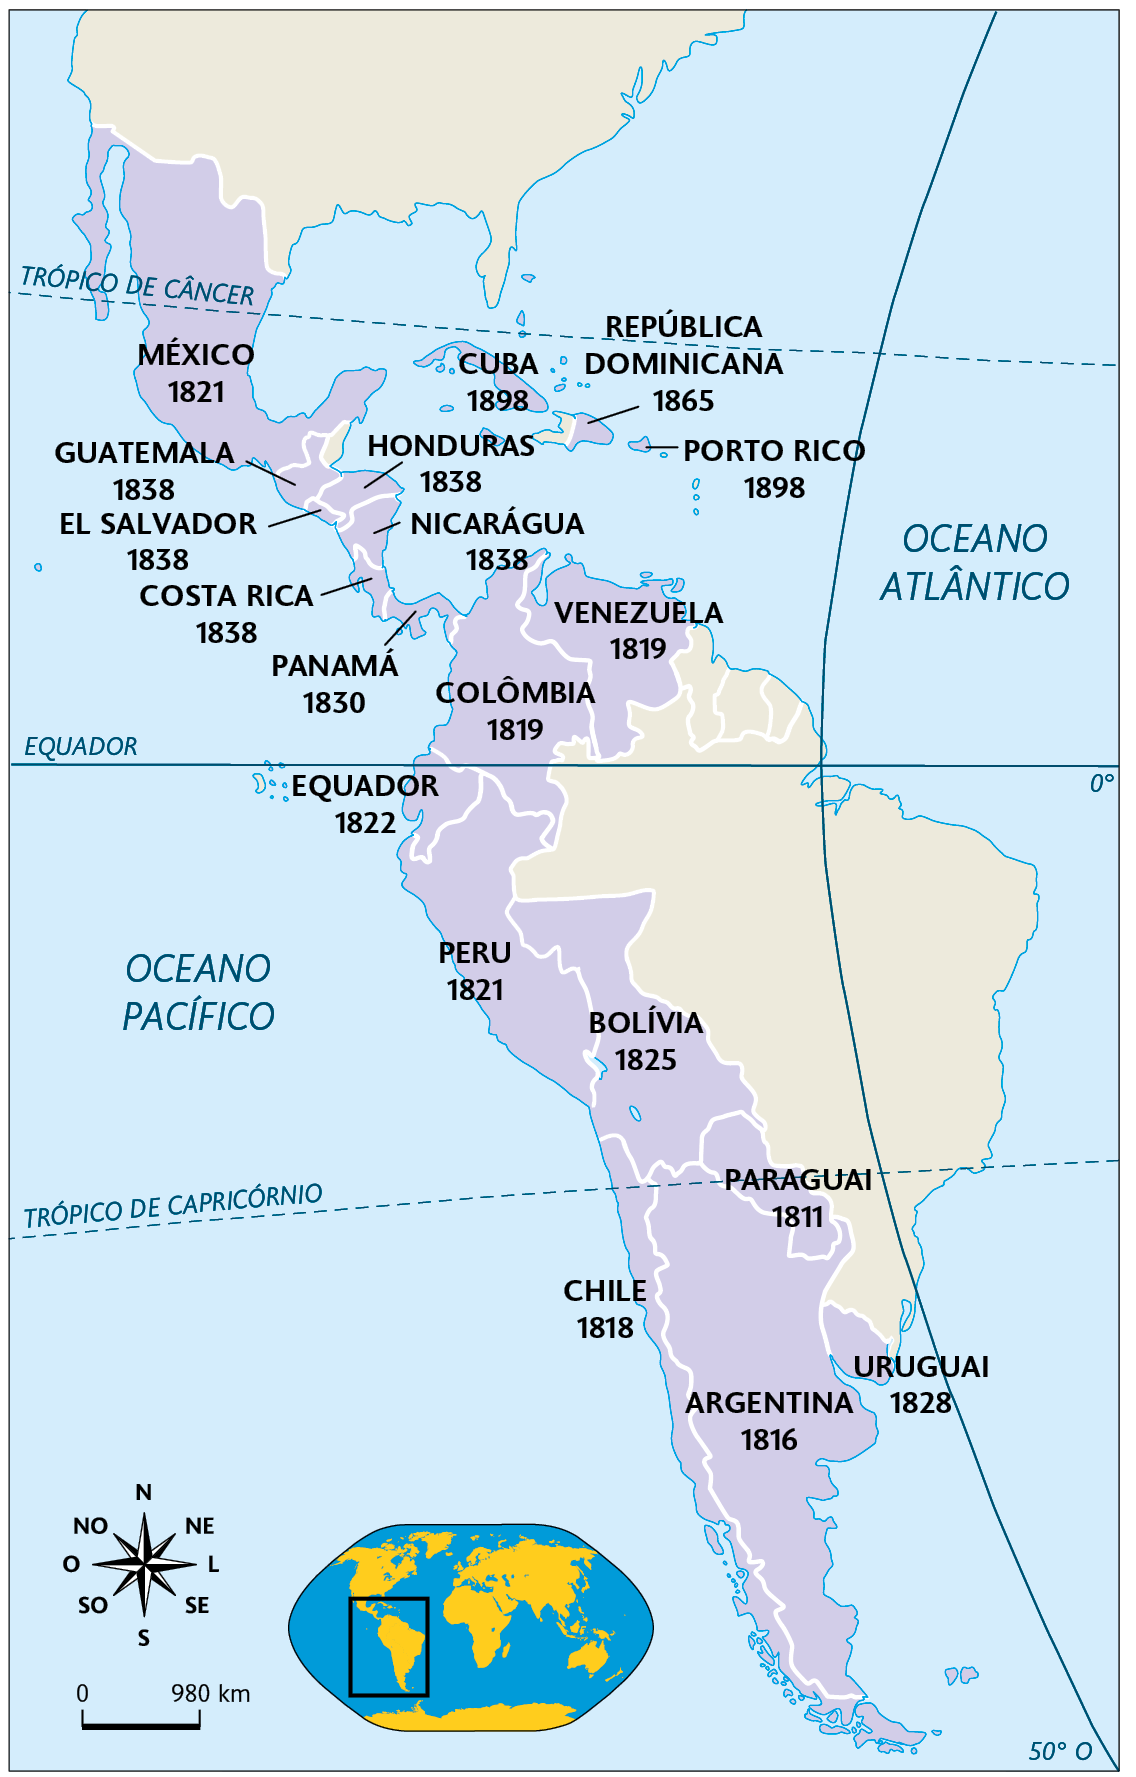 Mapa. Independências na América espanhola (1811-1898). Mapa territorial da América do Norte, América Central e América do Sul destacando os territórios e a data de independência. 

MÉXICO 1821.
GUATEMALA 1838.
EL SALVADOR 1838.
HONDURAS 1838.
CUBA 1898.
REPÚBLICA DOMINICANA 1865.
PORTO RICO 1898.
COSTA RICA 1838.
PANAMÁ 1830.
NICARÁGUA 1838.
VENEZUELA 1819.
COLOMBIA 1819.
EQUADOR 1822.
PERU 1821.
BOLÍVIA 1825.
CHILE 1818.
PARAGAI 1811.
ARGENTINA 1816.
URUGUAI 1828.

Na parte inferior, à esquerda, planisfério destacando parte da América. Ao lado, representação da rosa dos ventos e escala de 980 quilômetros por centímetro.